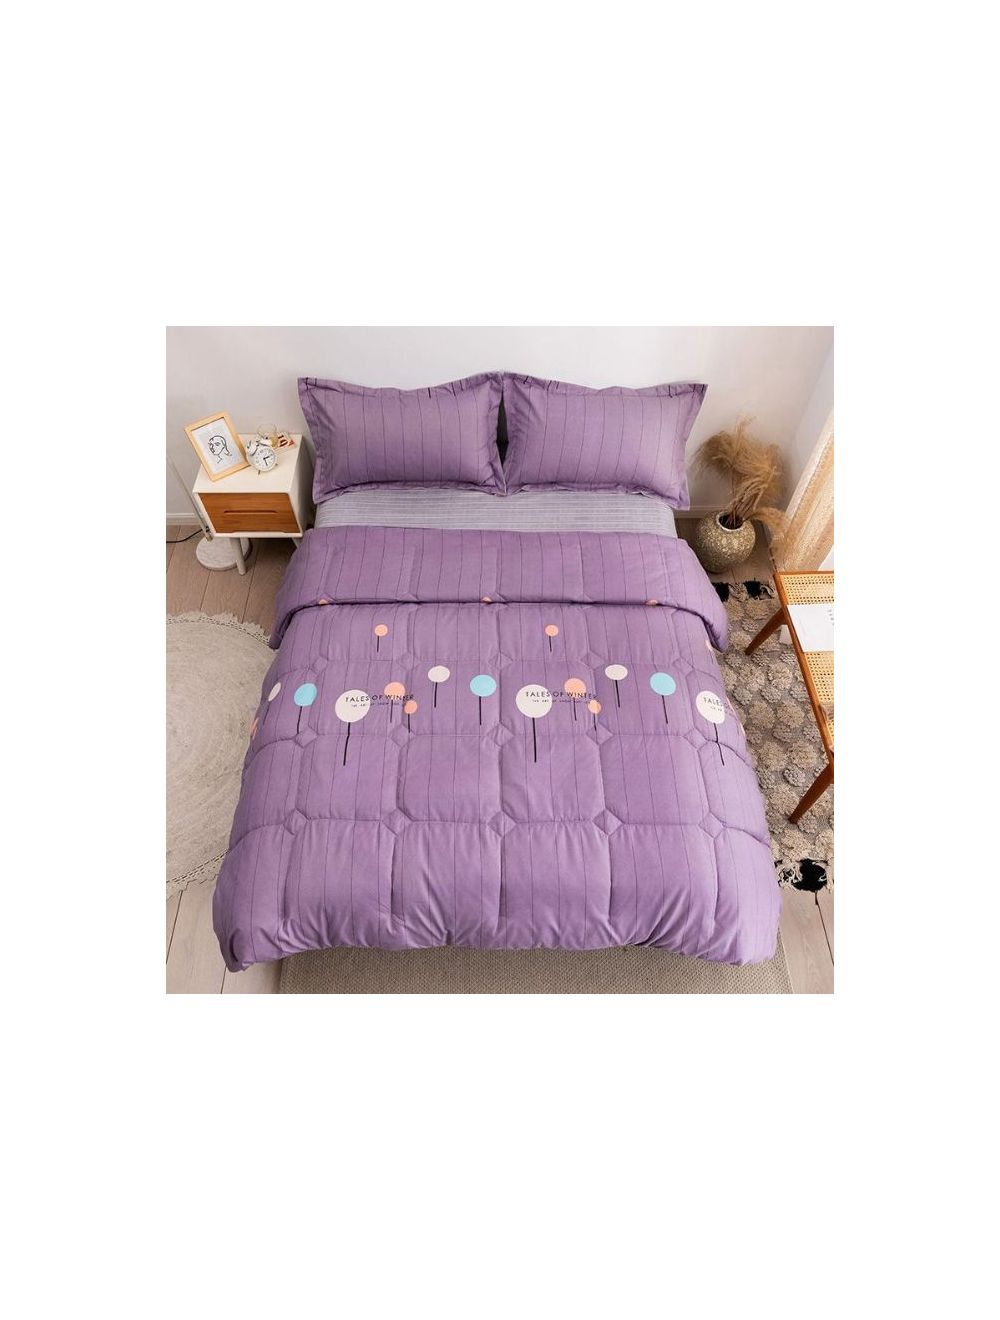 Rishahome 4 Piece King Size Comforter Set Microfiber Multicolour 220x240cm-LHUCS0005